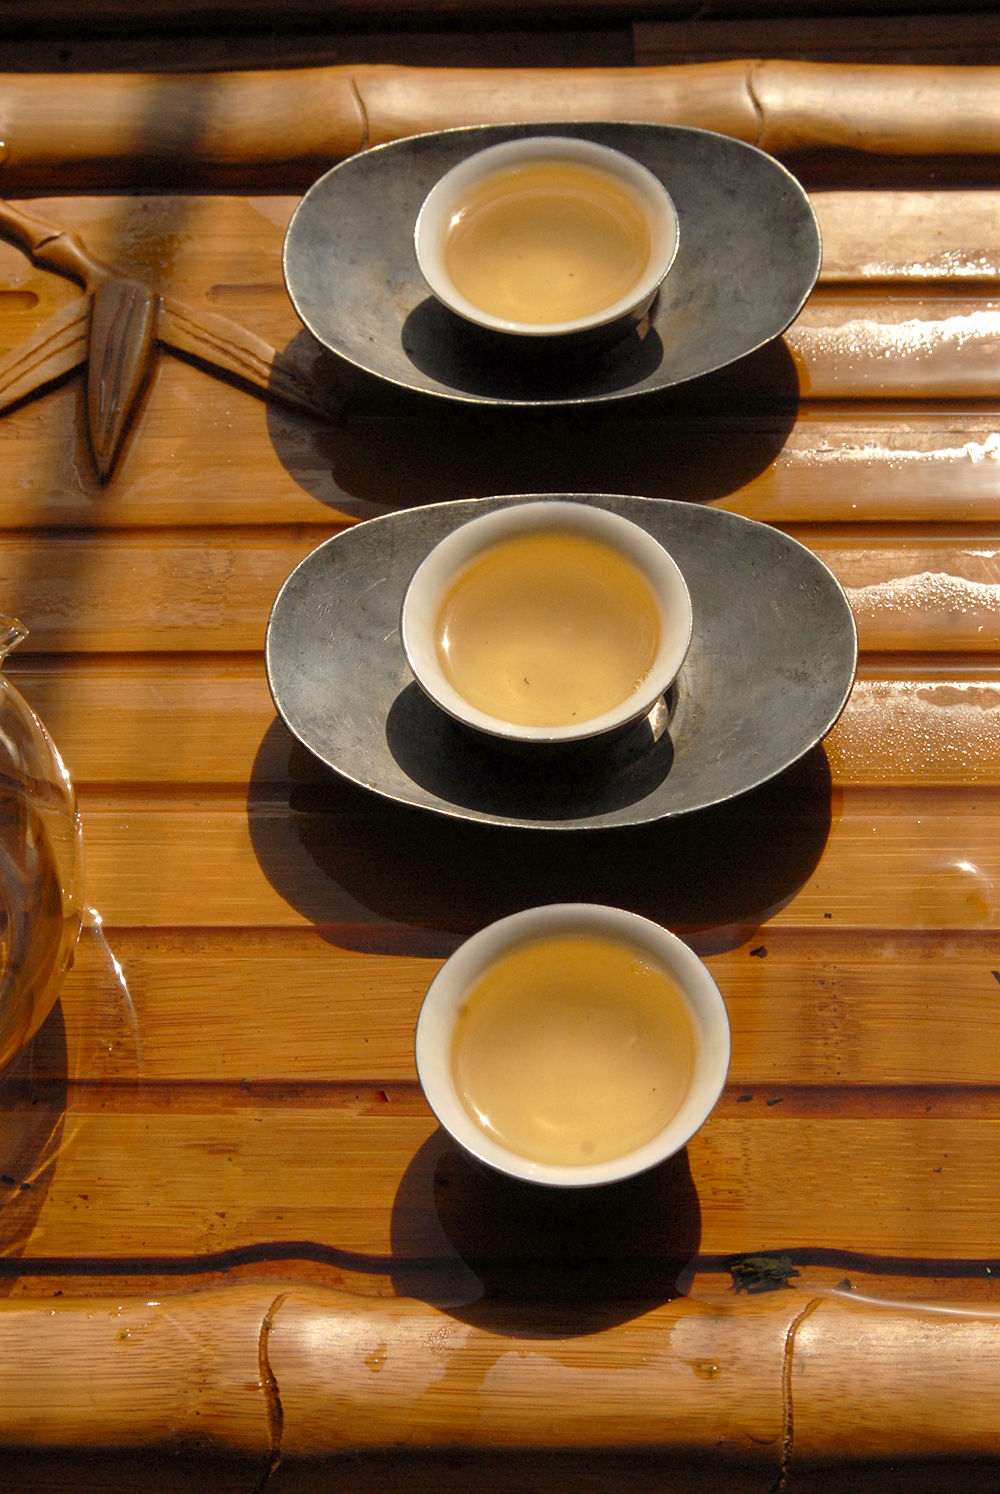 Feng Huang Dan Cong Ba Xian wulong tea